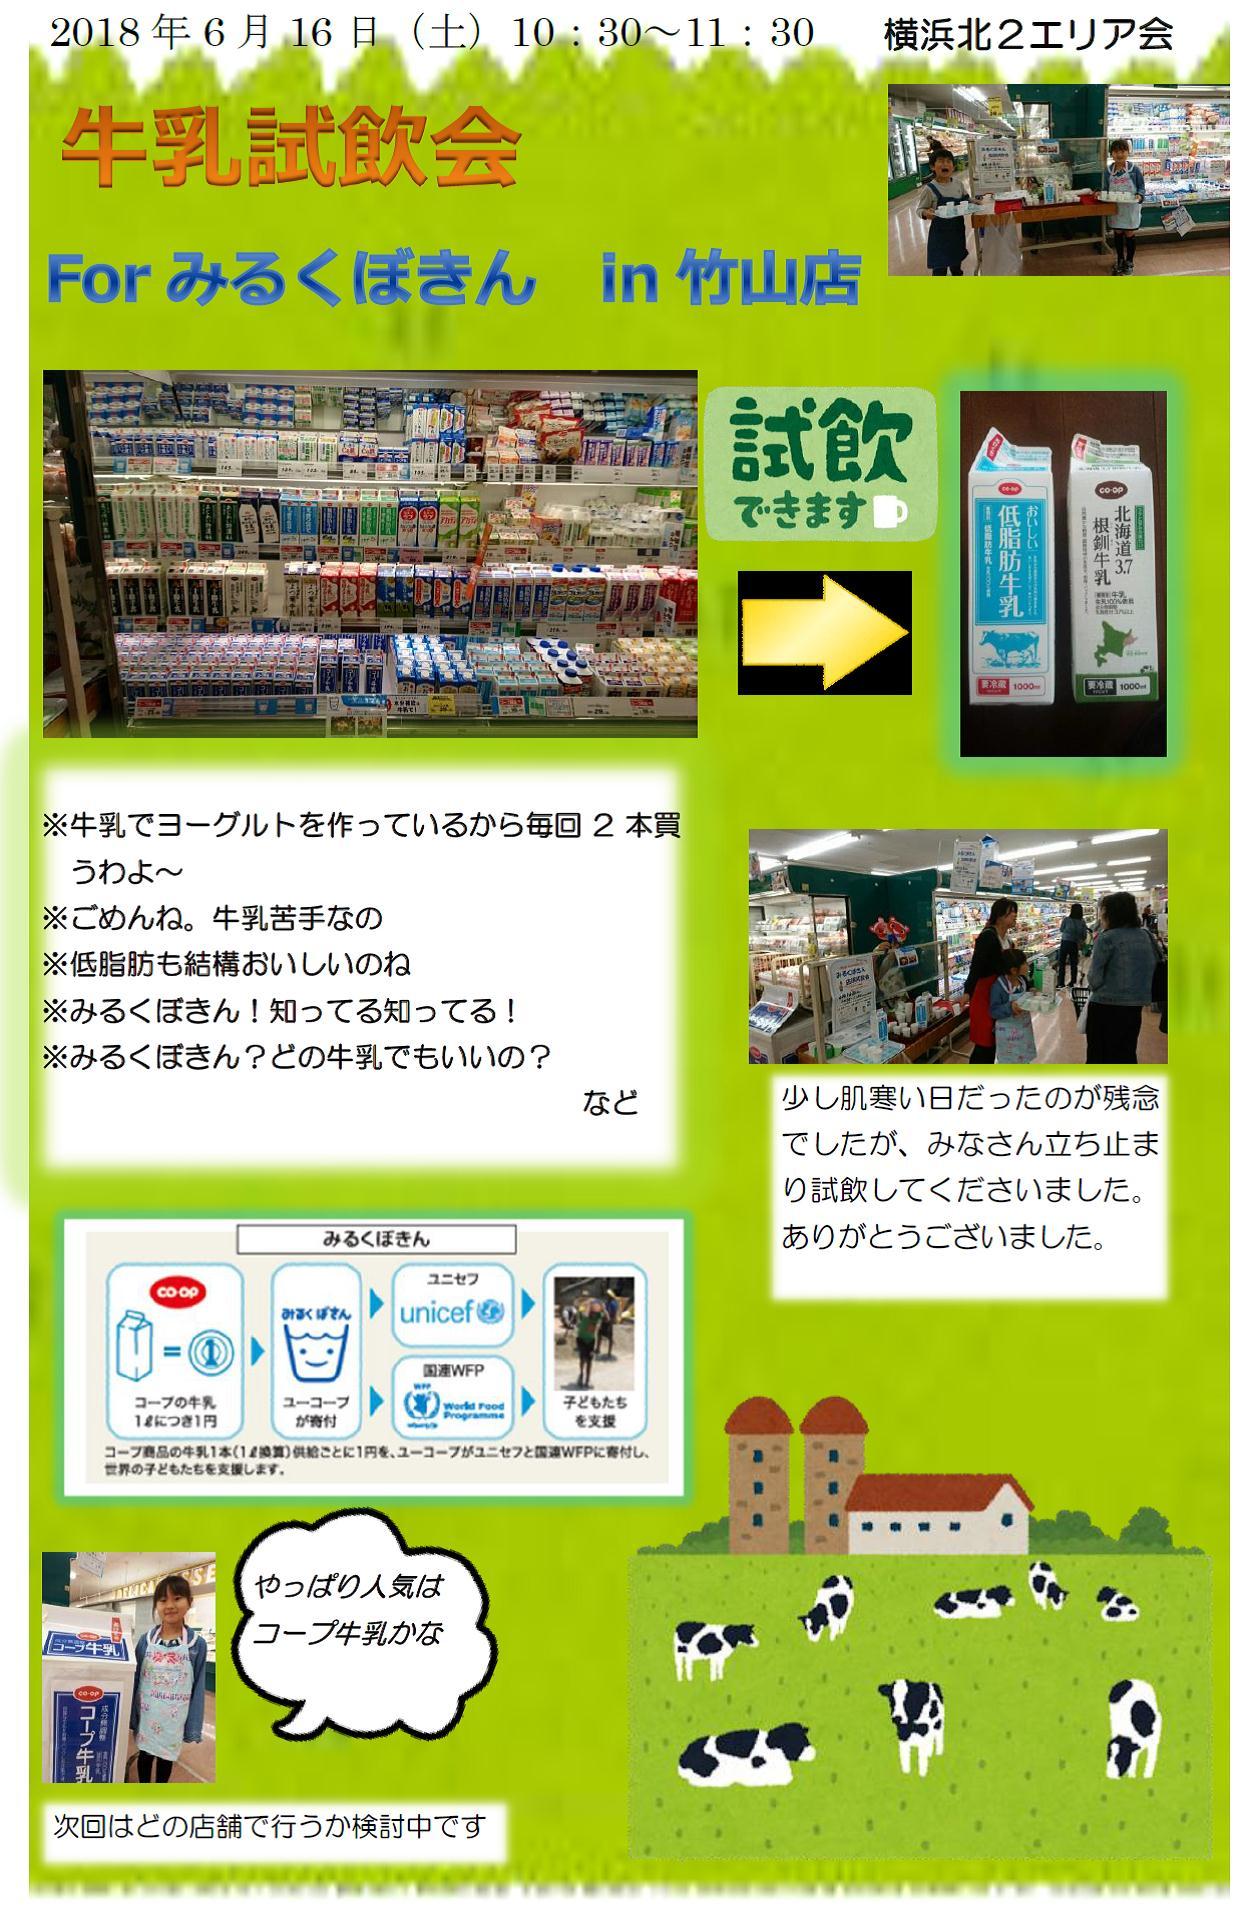 http://kanagawa.ucoop.or.jp/hiroba/areanews/files/milkbokin20180616.jpg